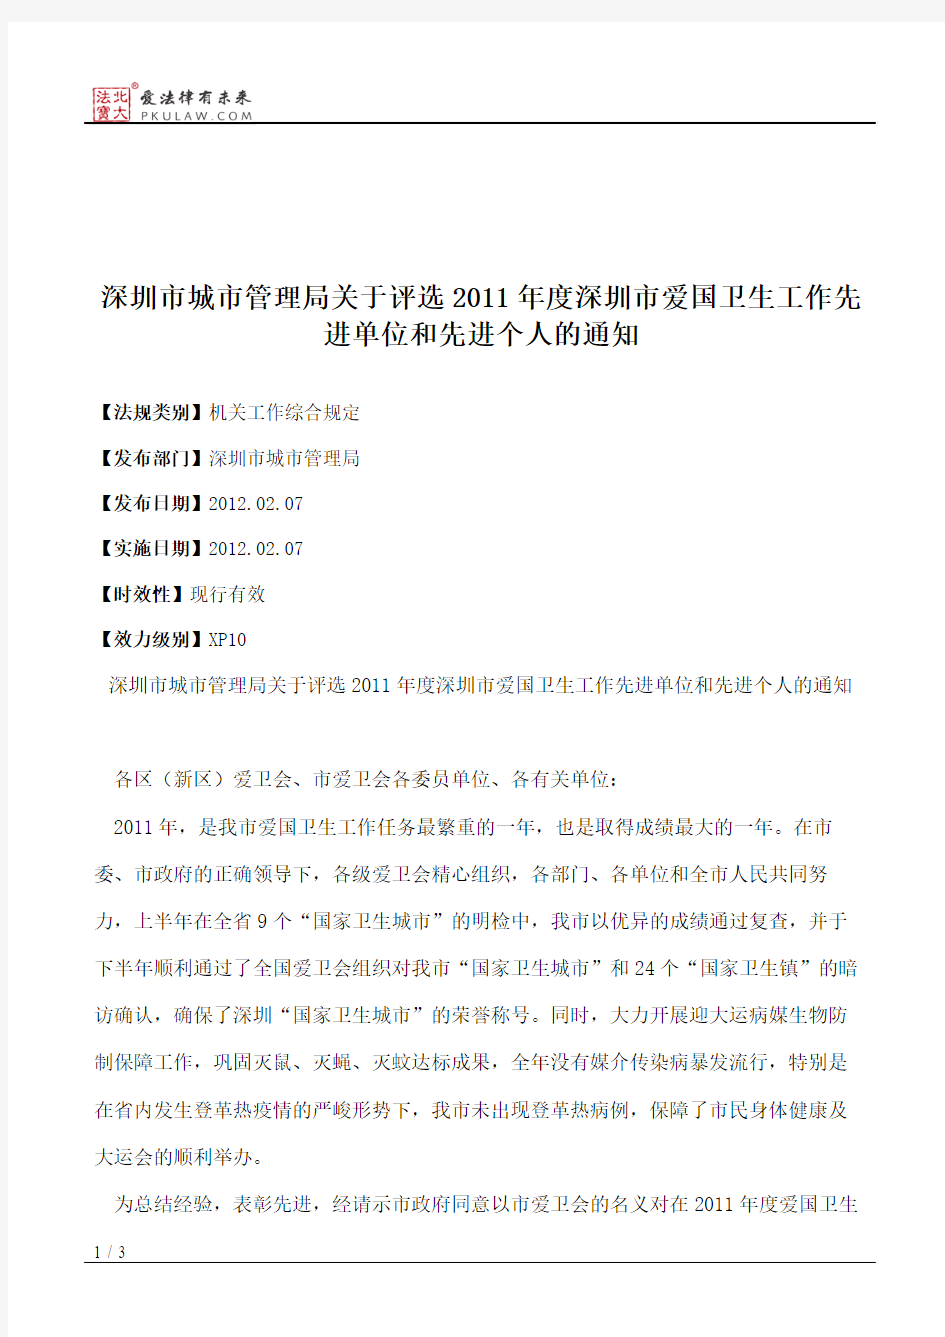 深圳市城市管理局关于评选2011年度深圳市爱国卫生工作先进单位和